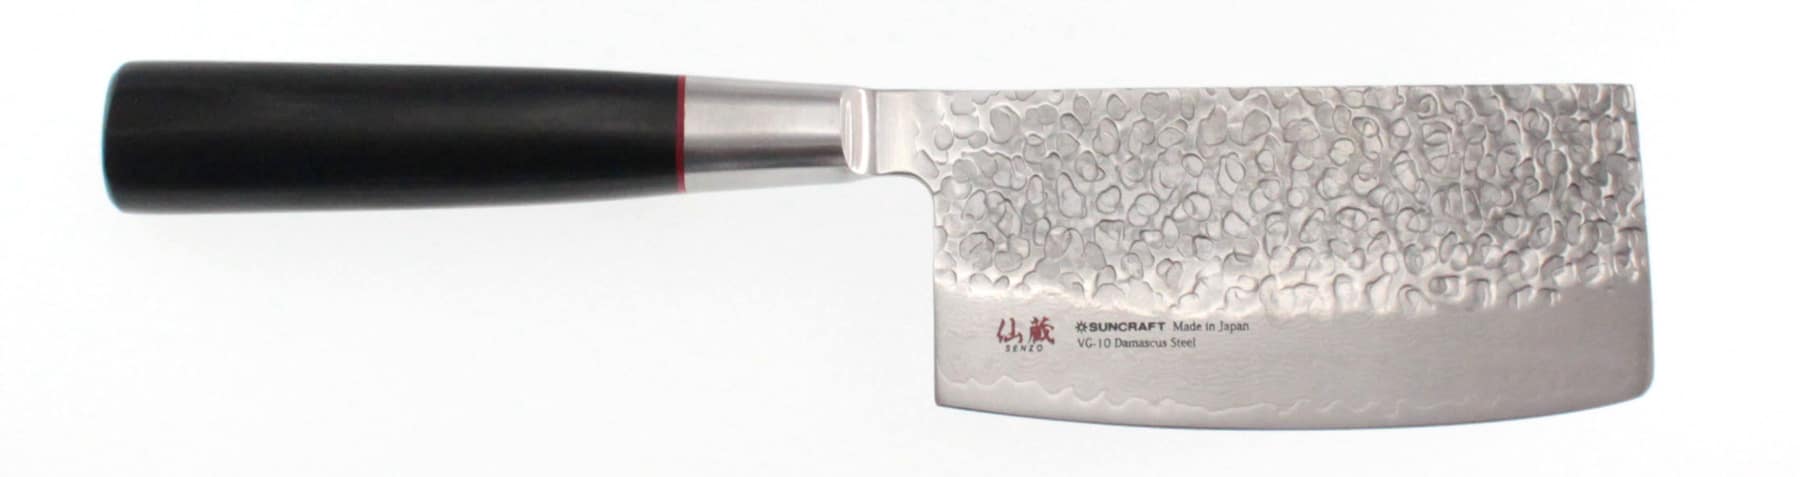 Couteau japonais Usuba